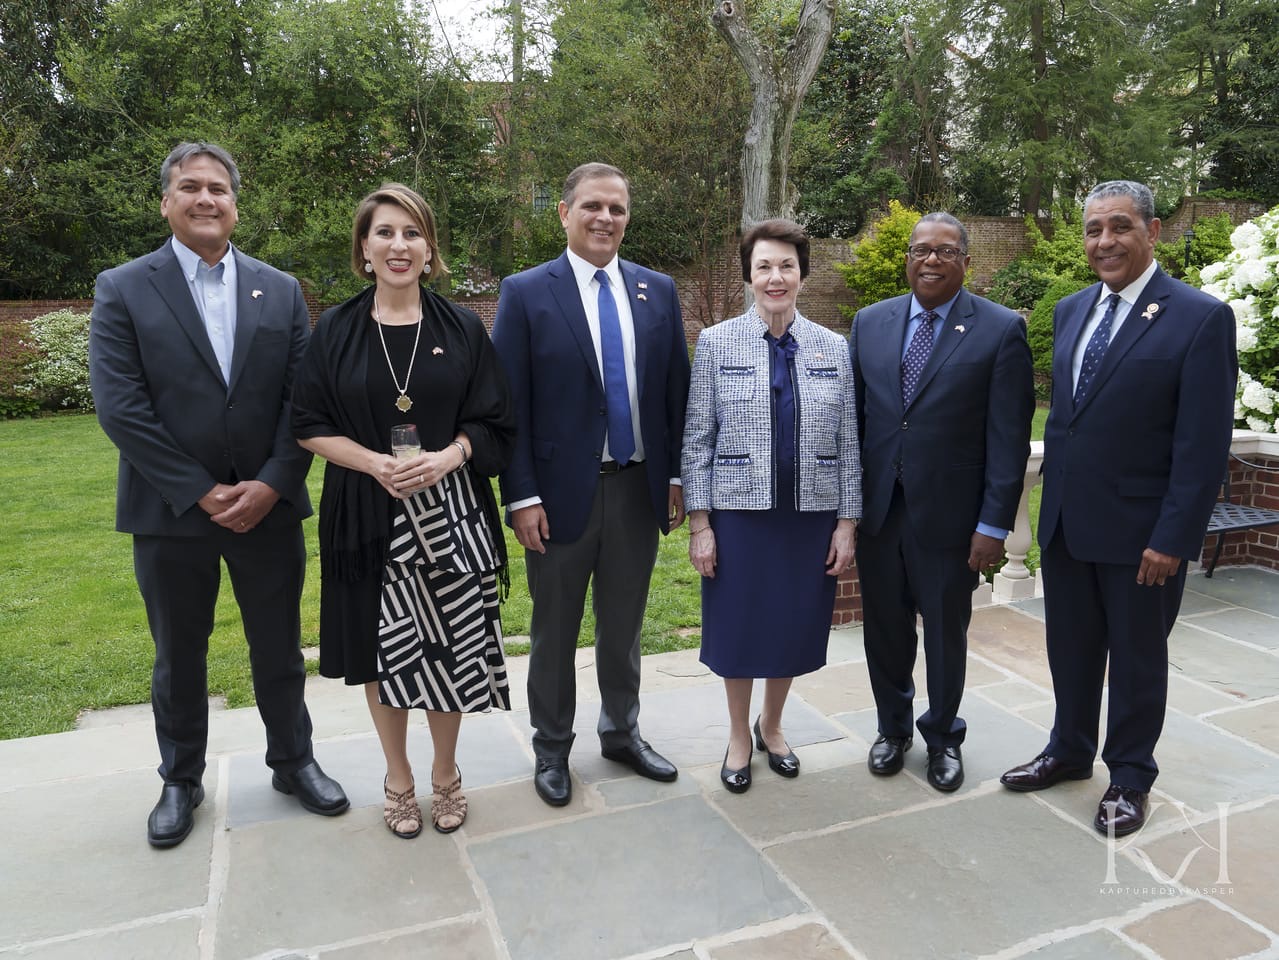 Embajada de RD en los Estados Unidos celebra recepción por 140 aniversario de relaciones diplomáticas entre ambas naciones